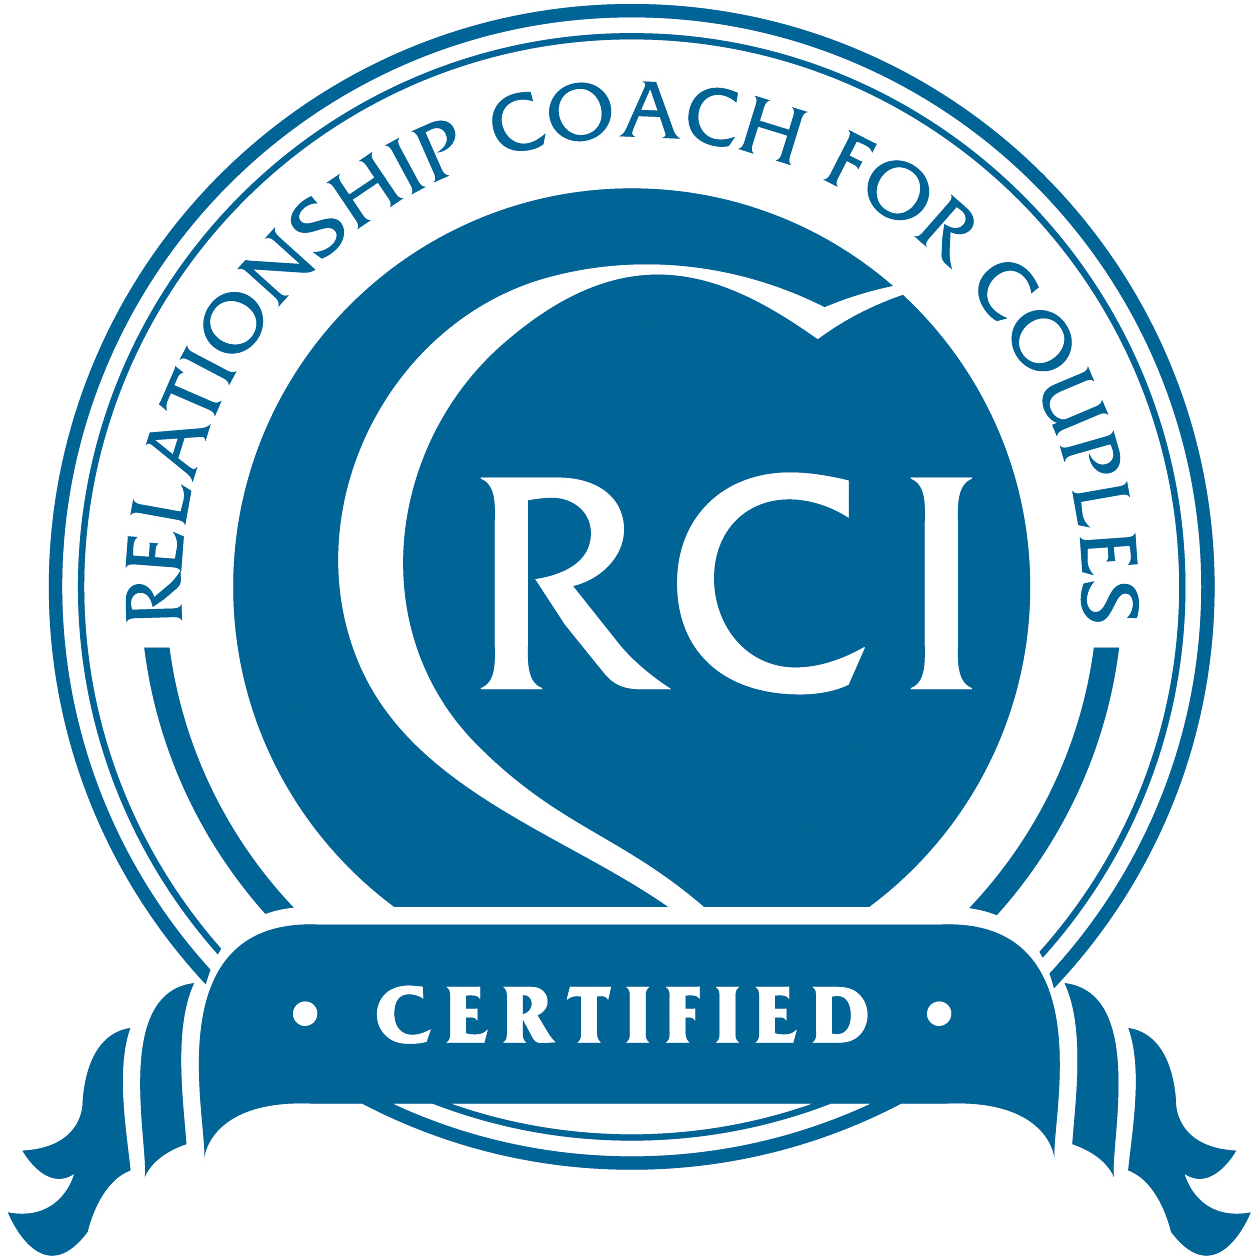 Relationship Coaching Institute